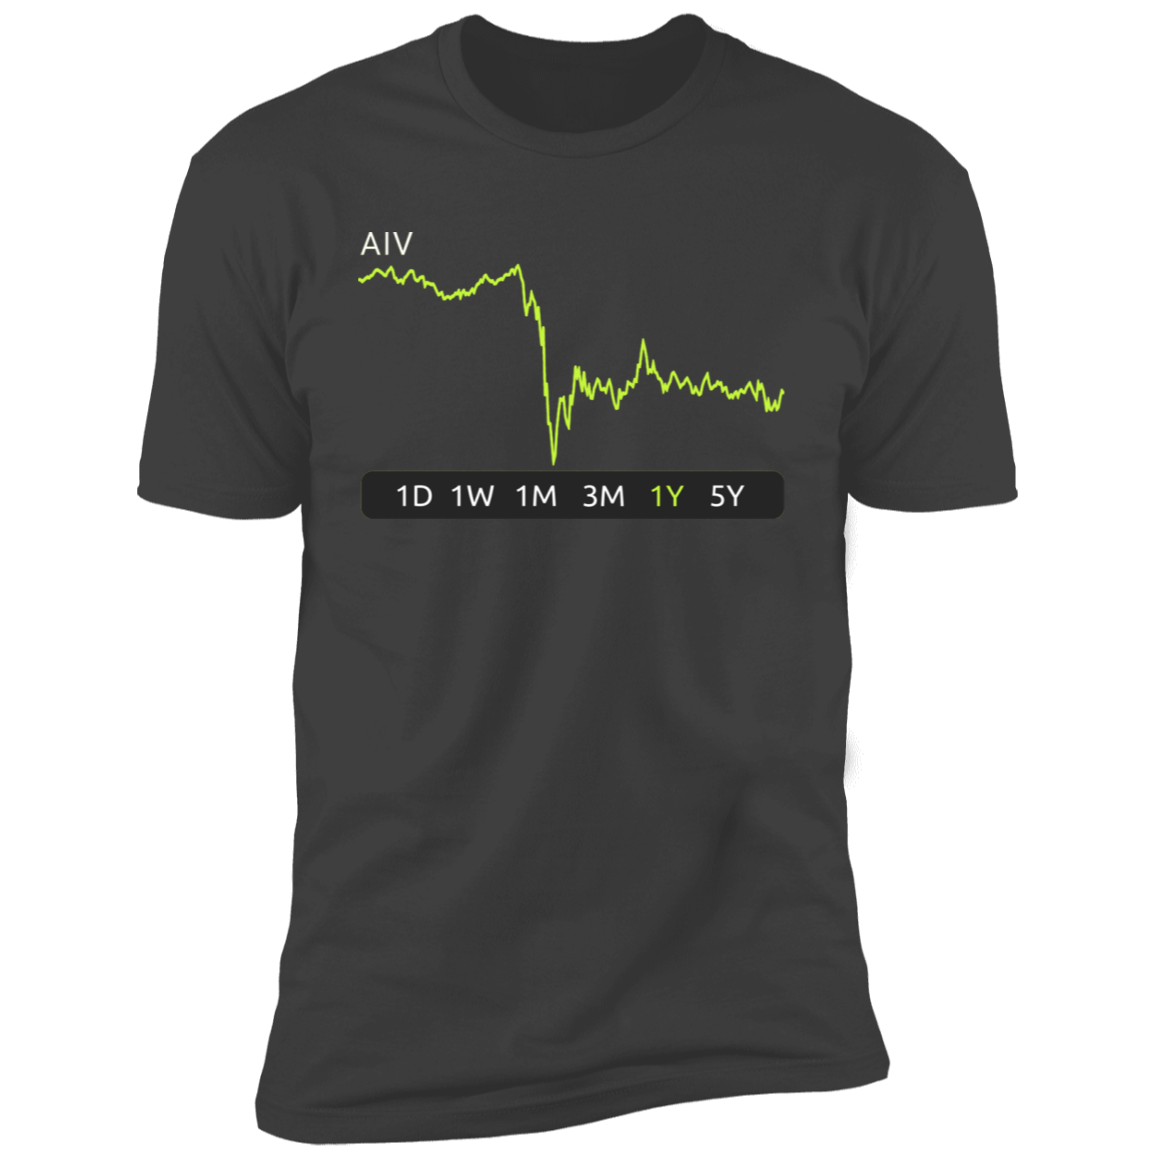 AIV Stock 1y Premium T-Shirt